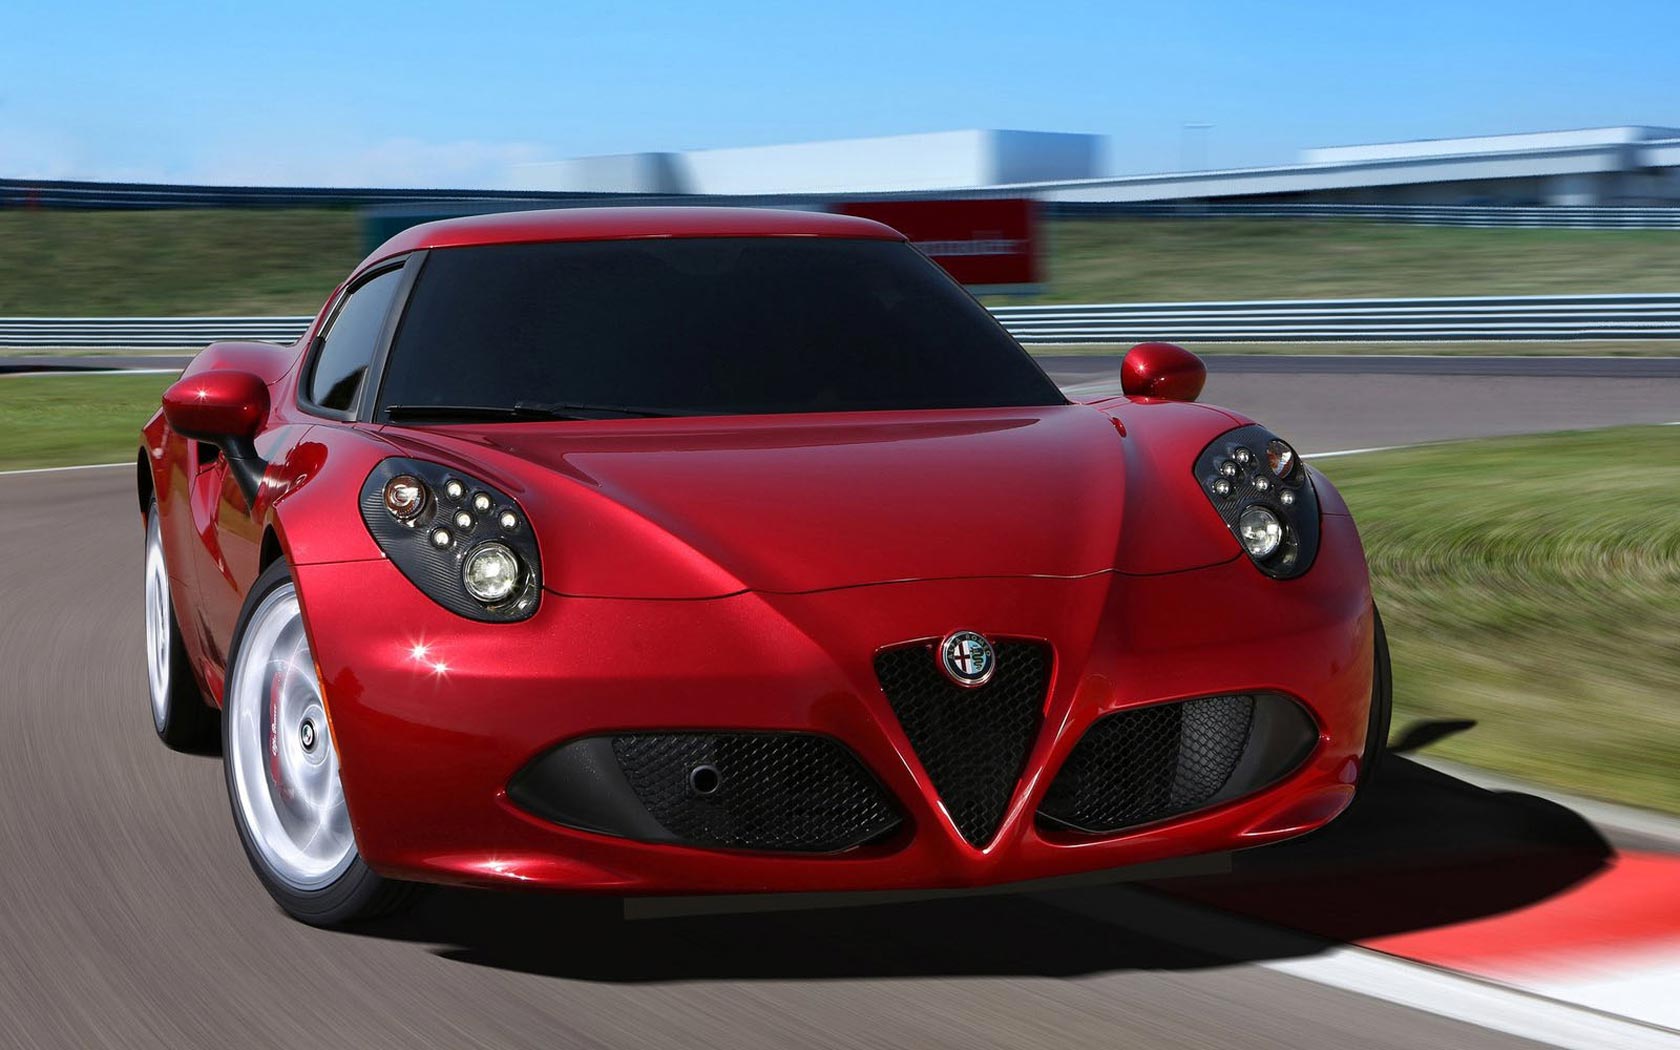  Alfa Romeo 4C 